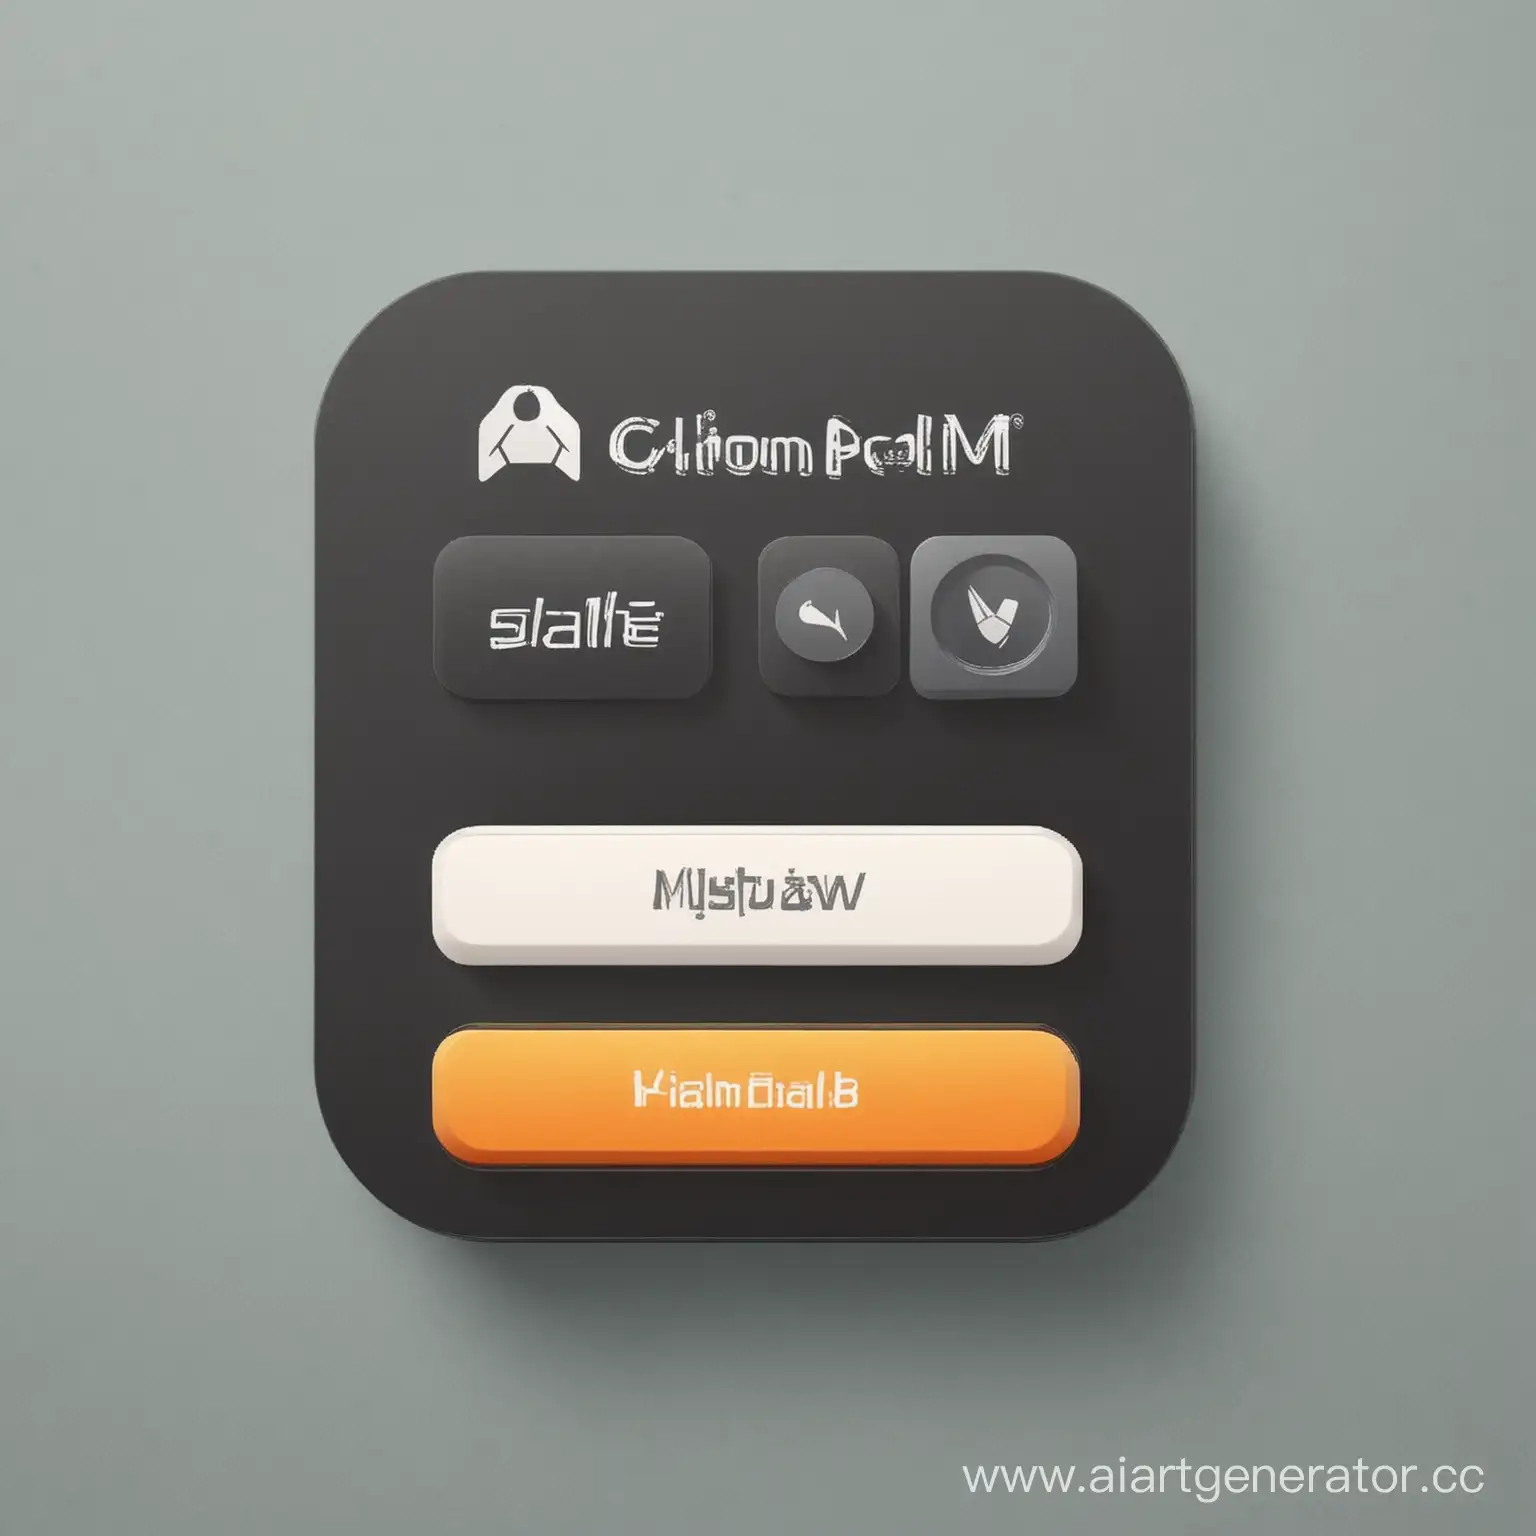 создай главный экран приложения с логотипом, названием и другими различными необходимыми кнопками